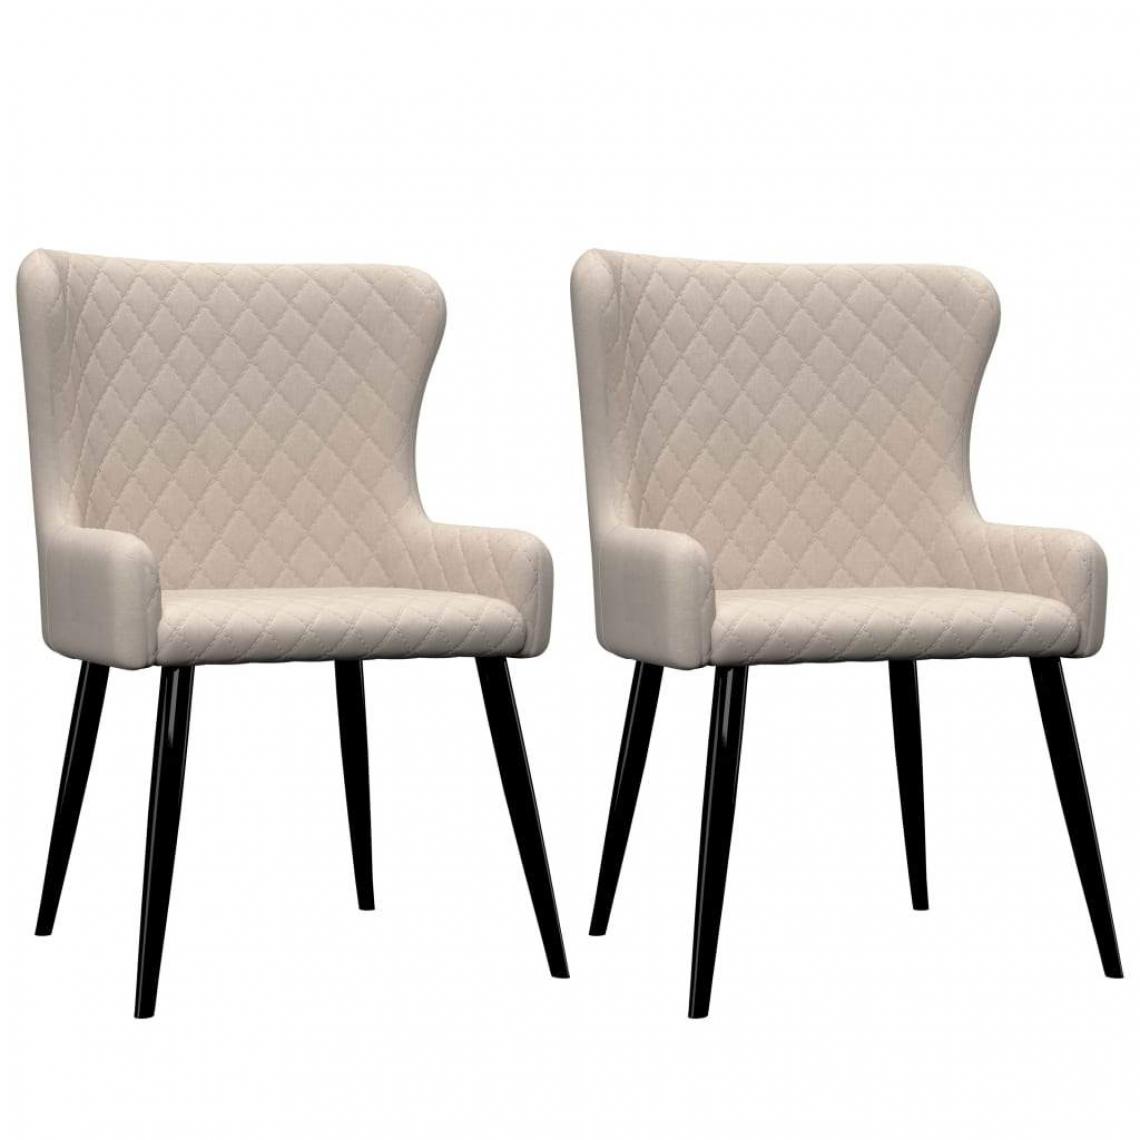 Decoshop26 - Lot de 2 chaises de salle à manger cuisine moderne et confortable en tissu crème CDS020441 - Chaises